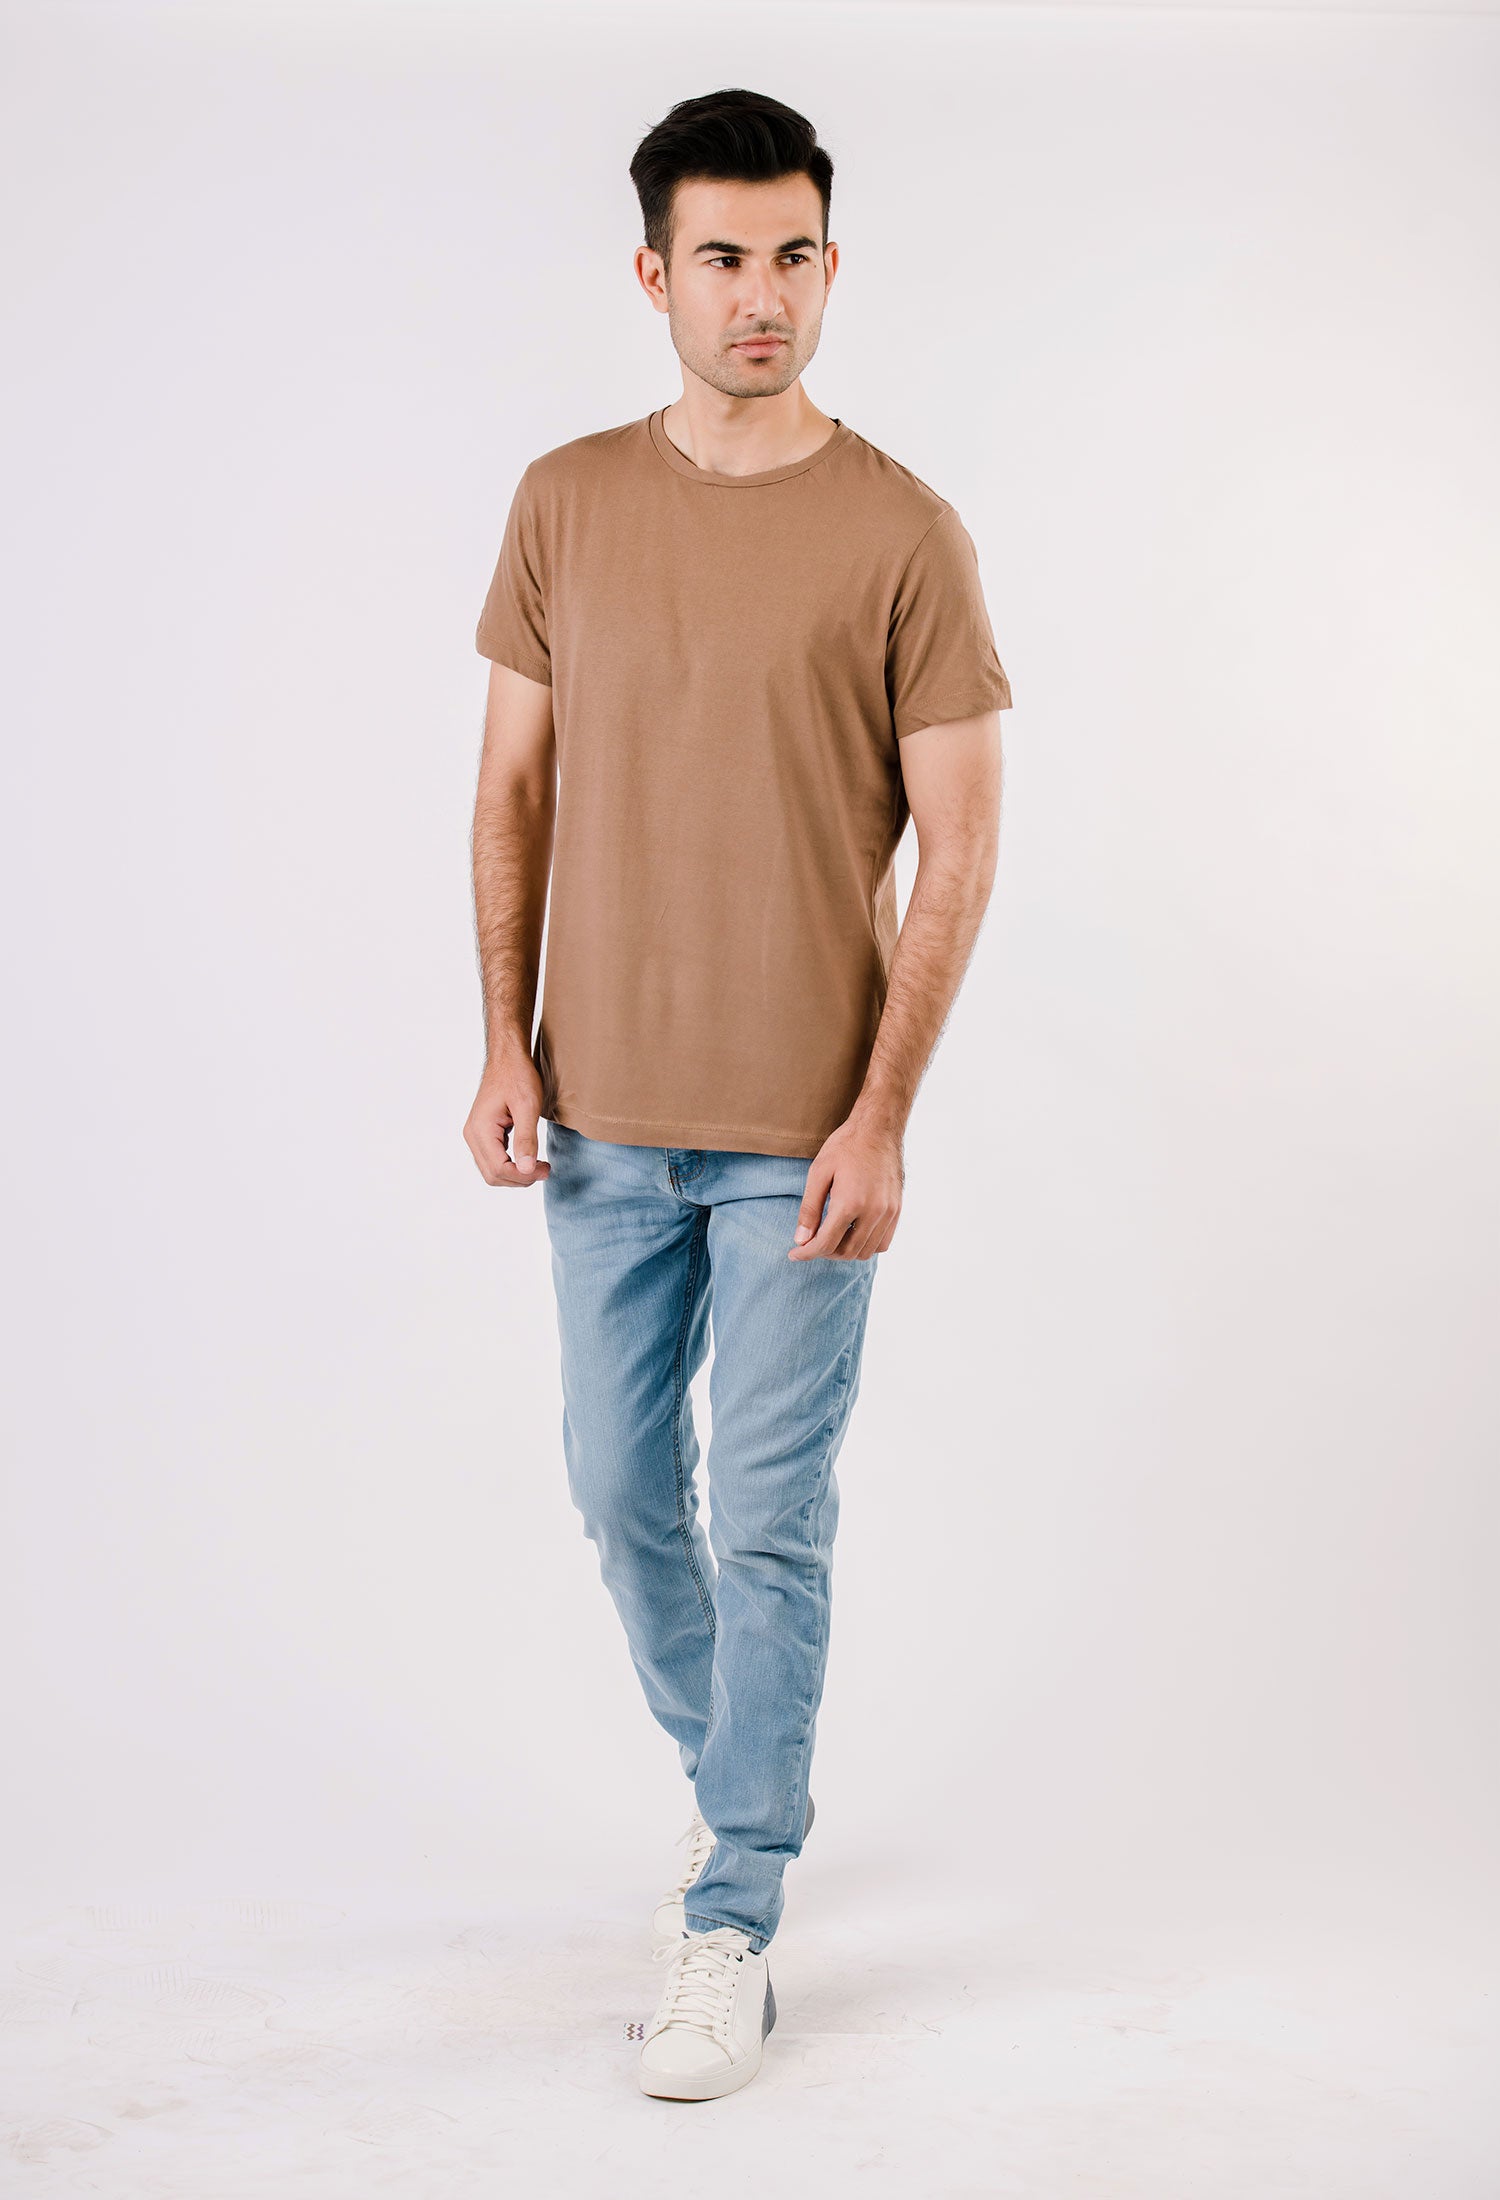 Khaki Basic T-Shirt (T-SHB-0001)